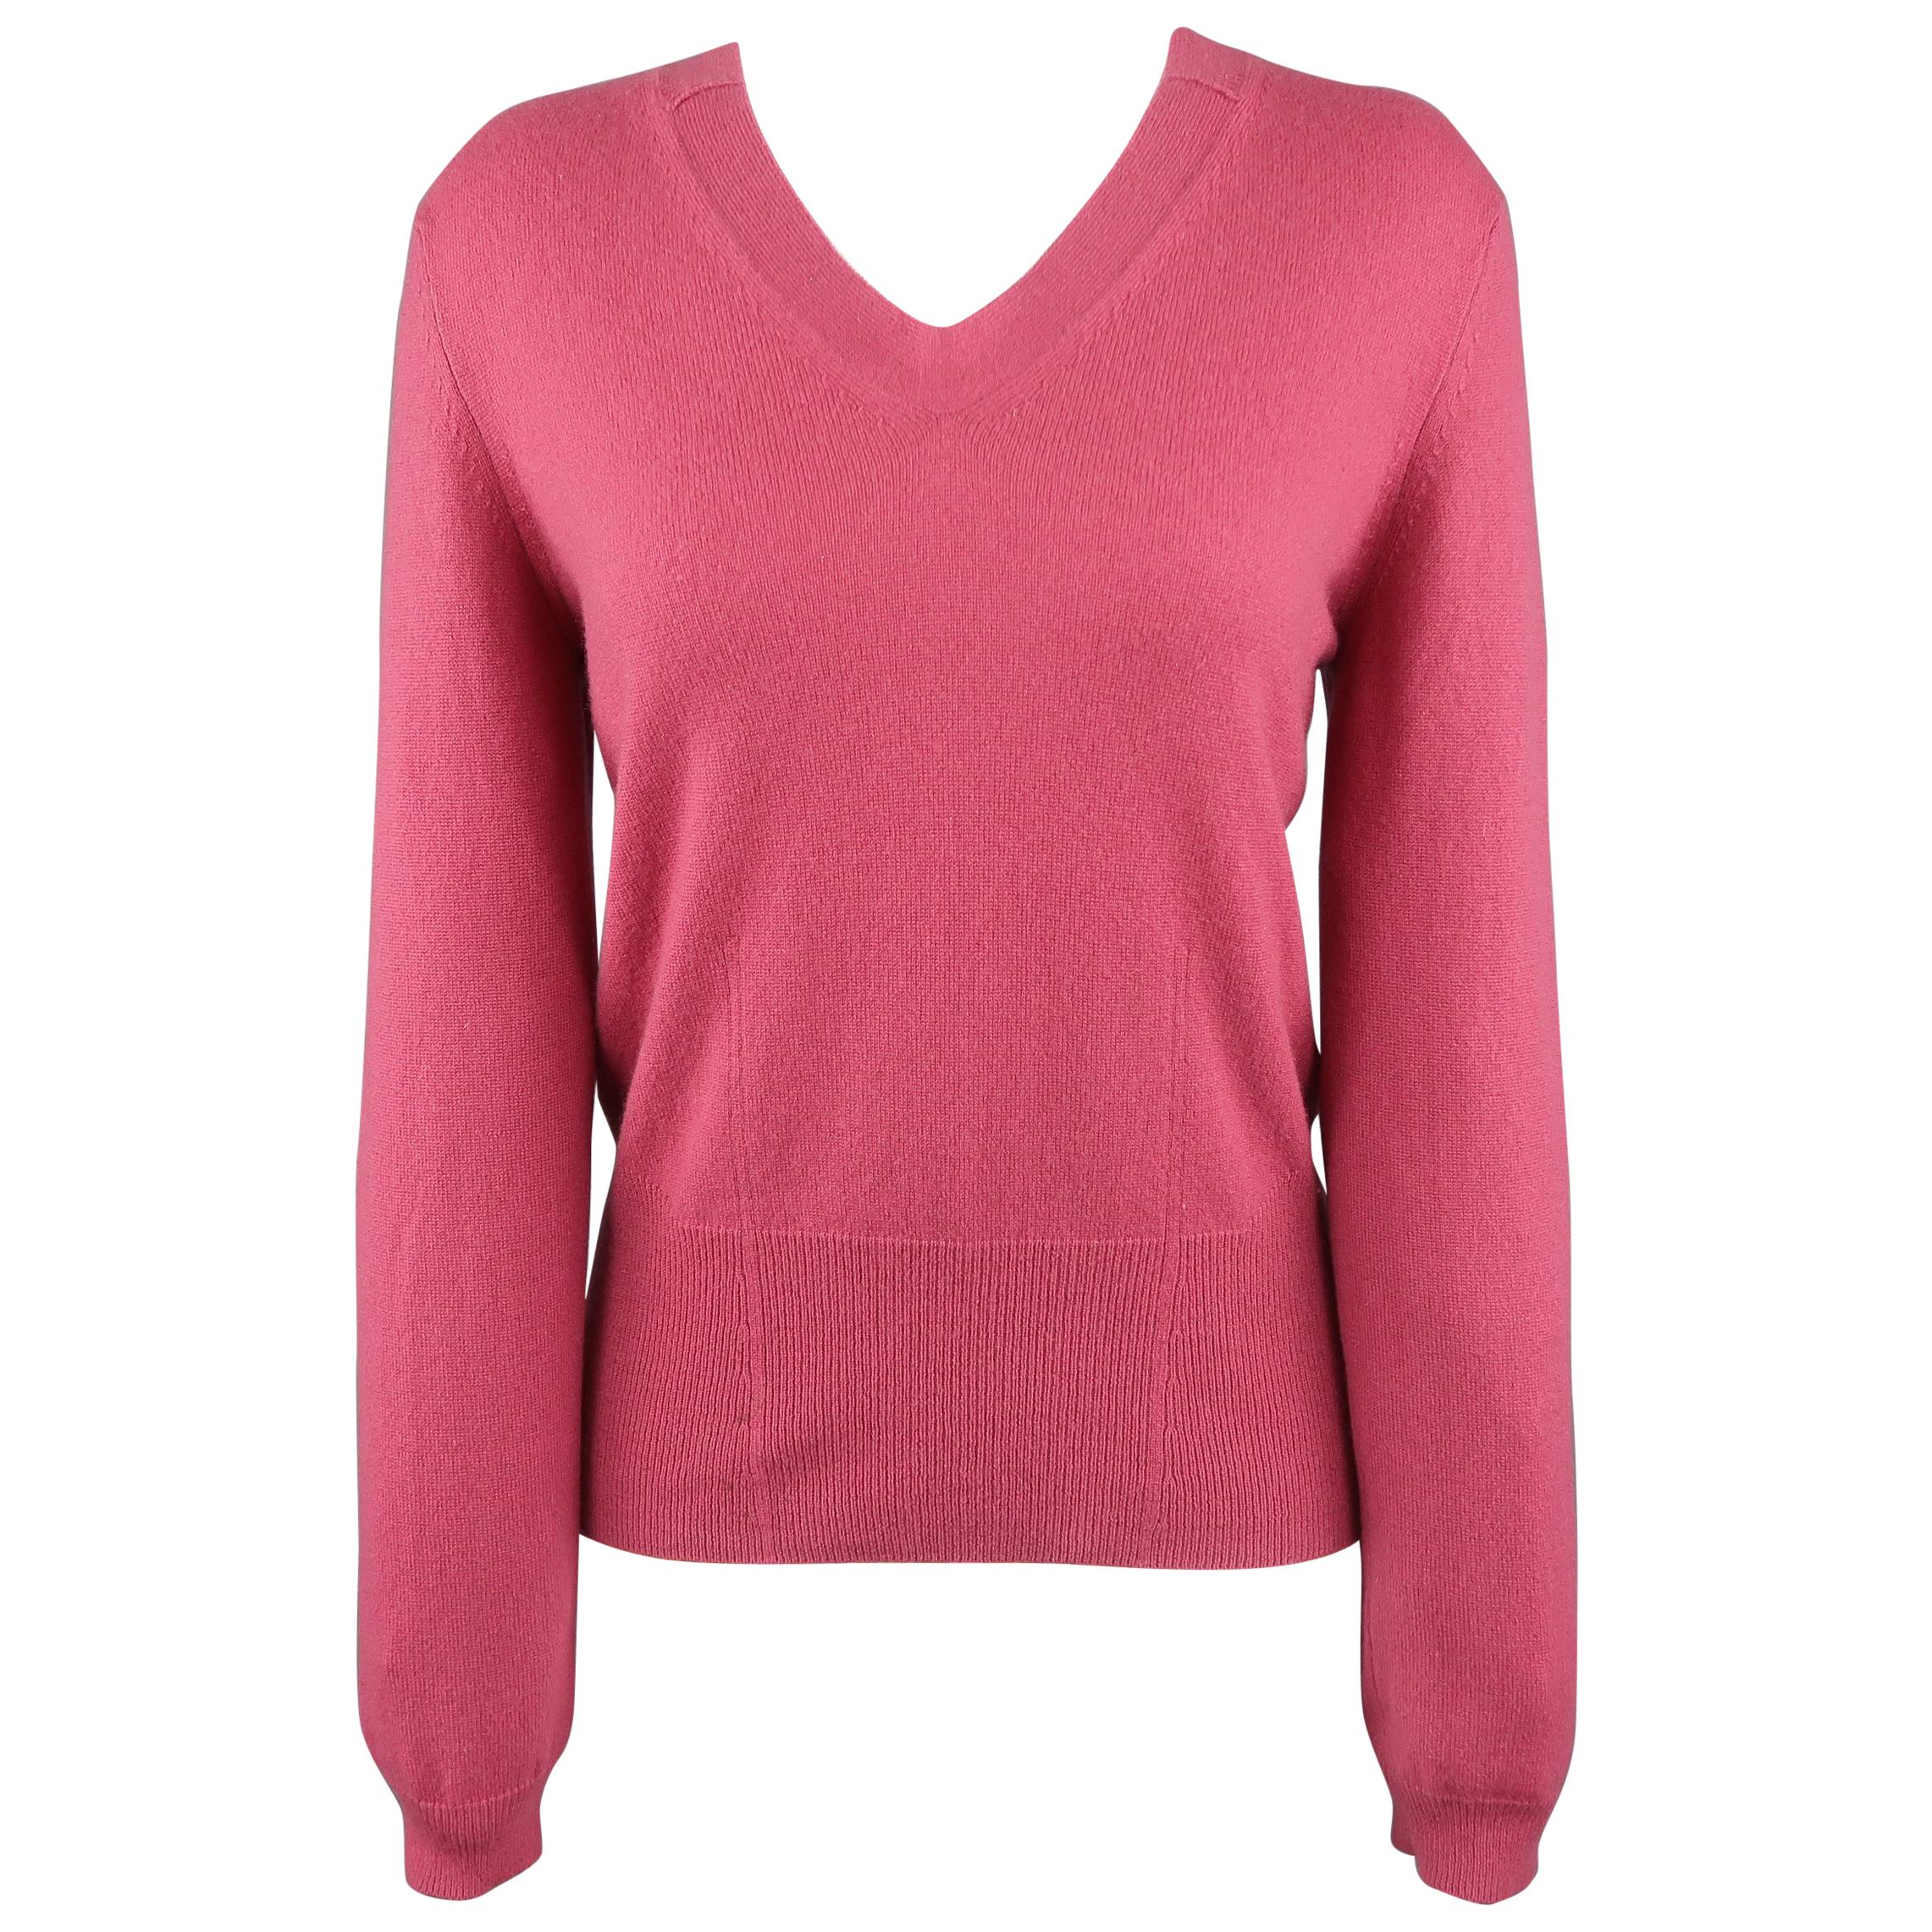 JIL SANDER Size 6 Raspberry Pink Cashmere V Neck Sweater